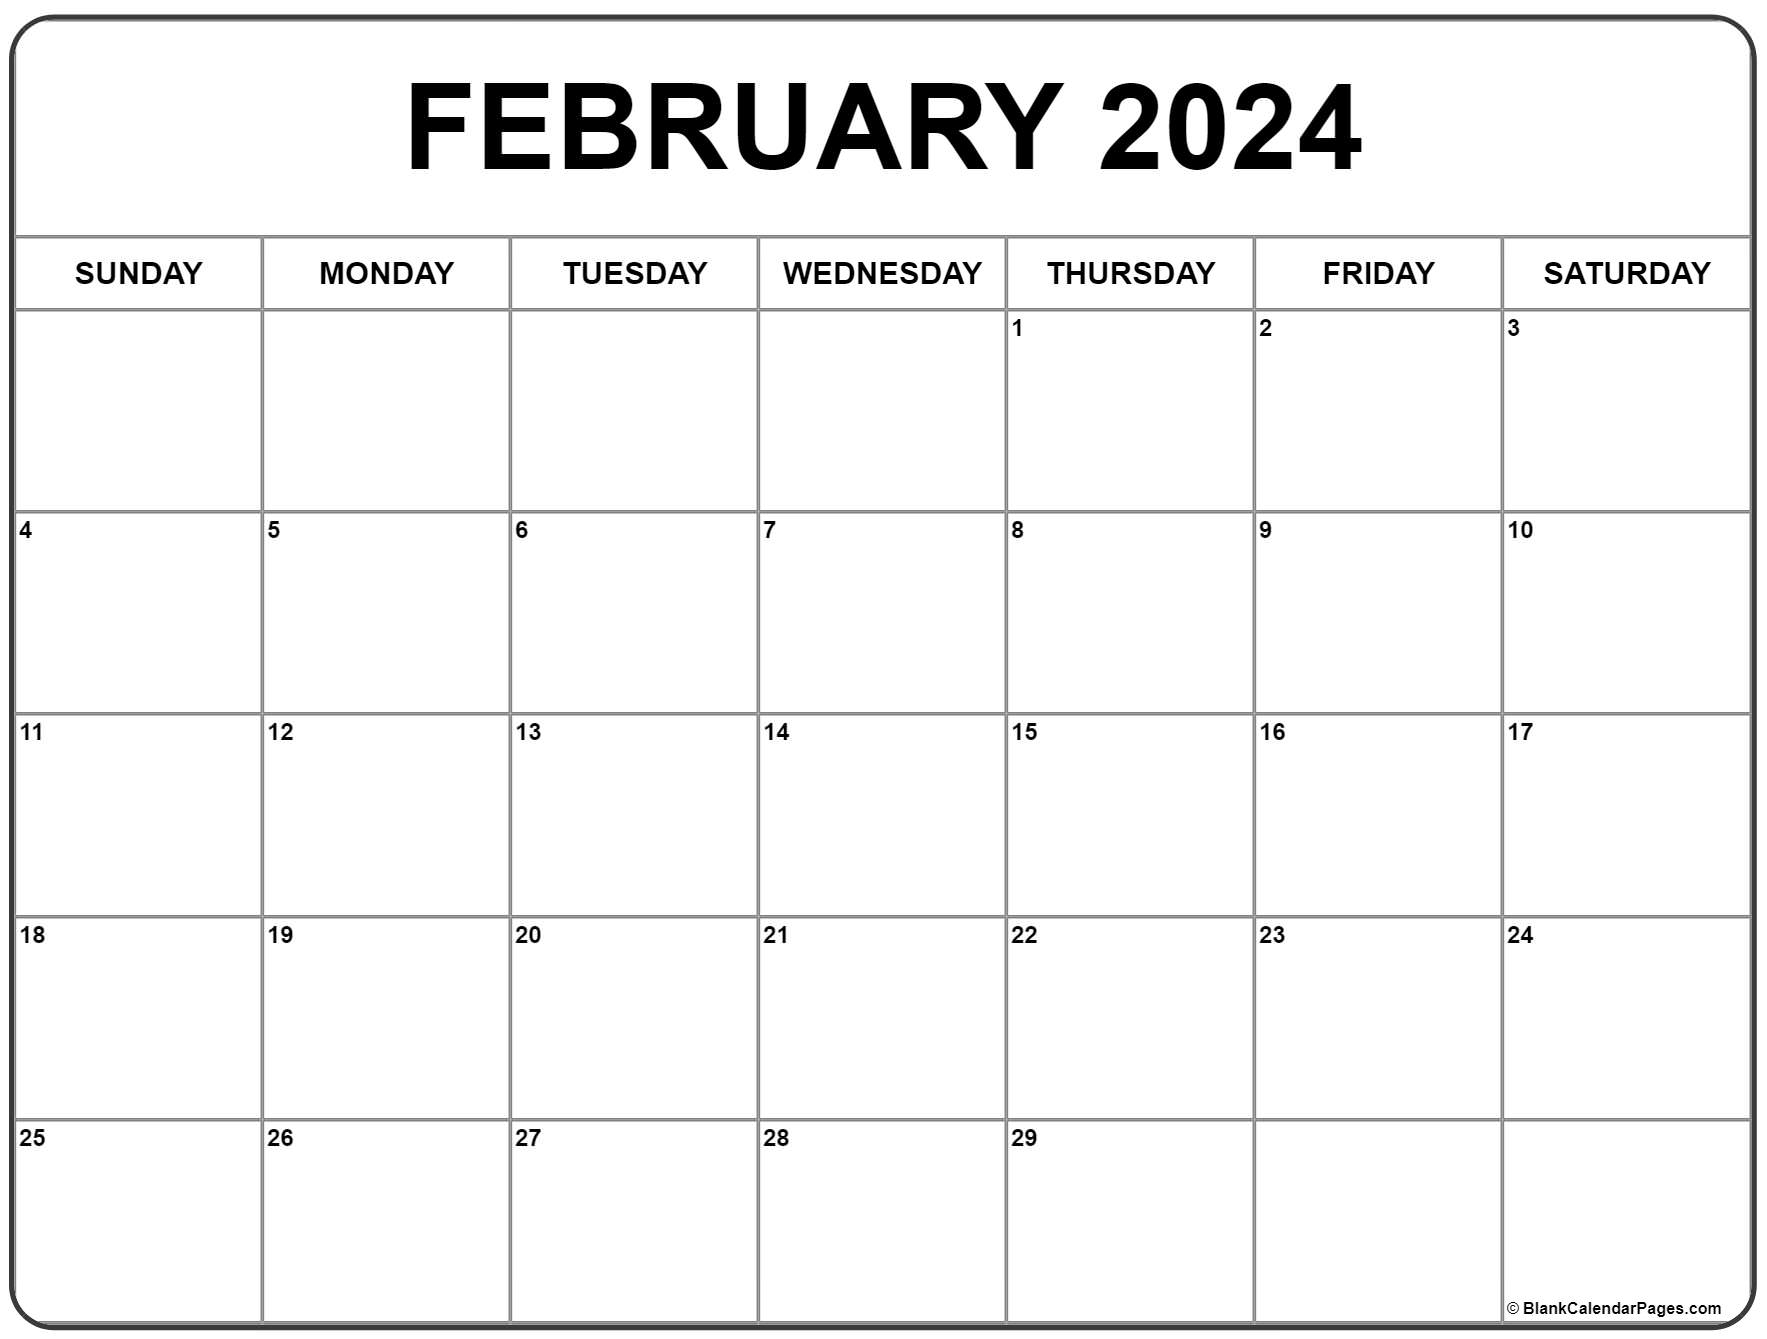 February 2024 Calendar | Free Printable Calendar for Free Printable 2024 February Calendar